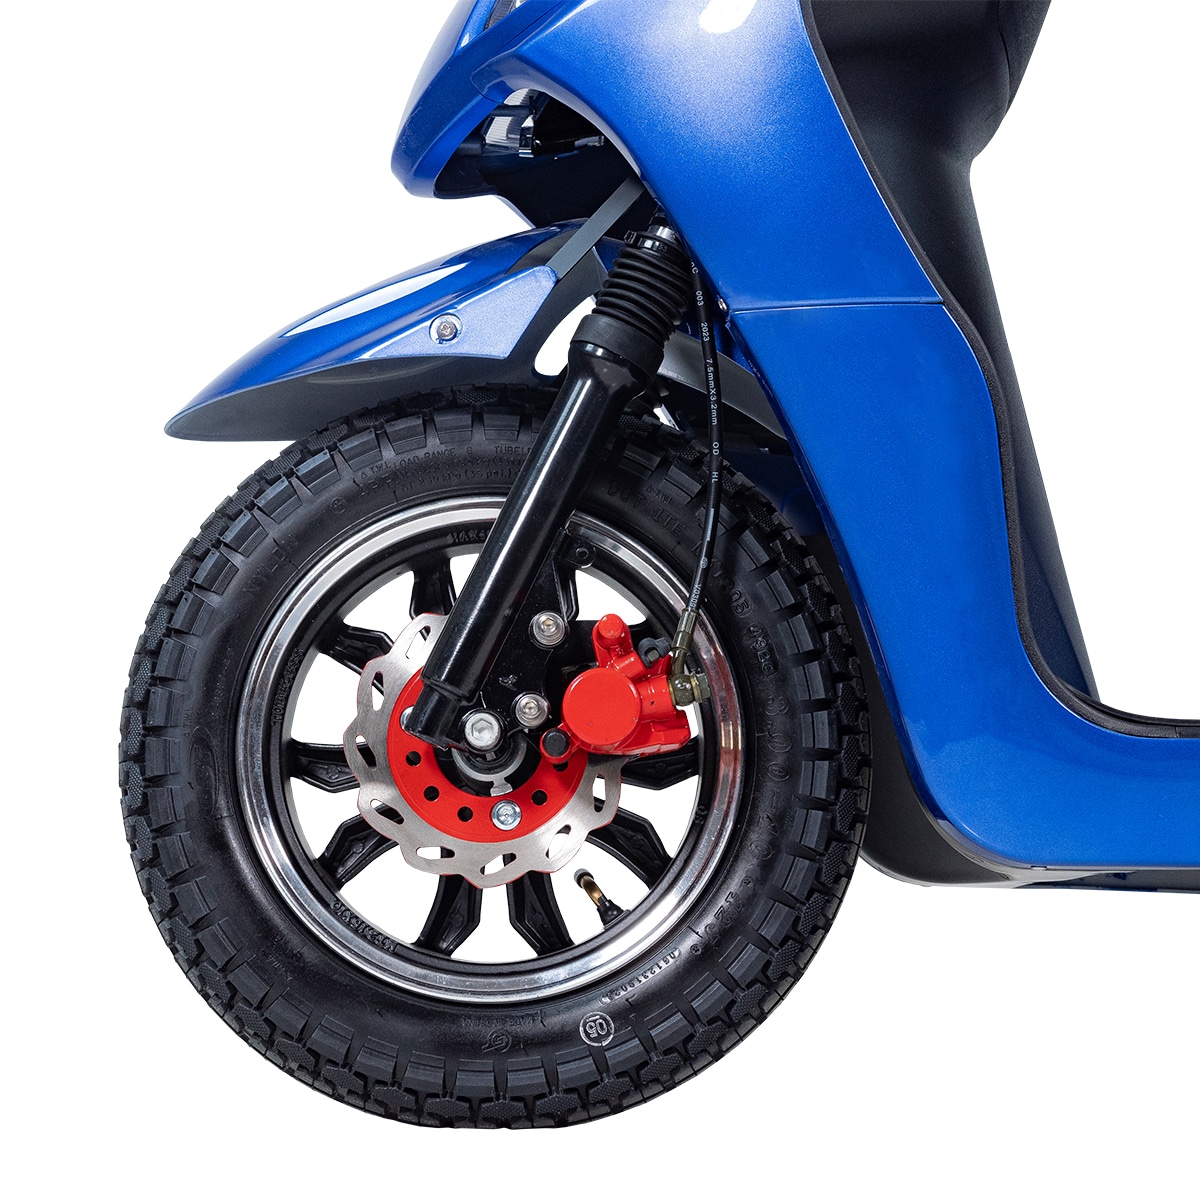 Blimo Moto Sport-400